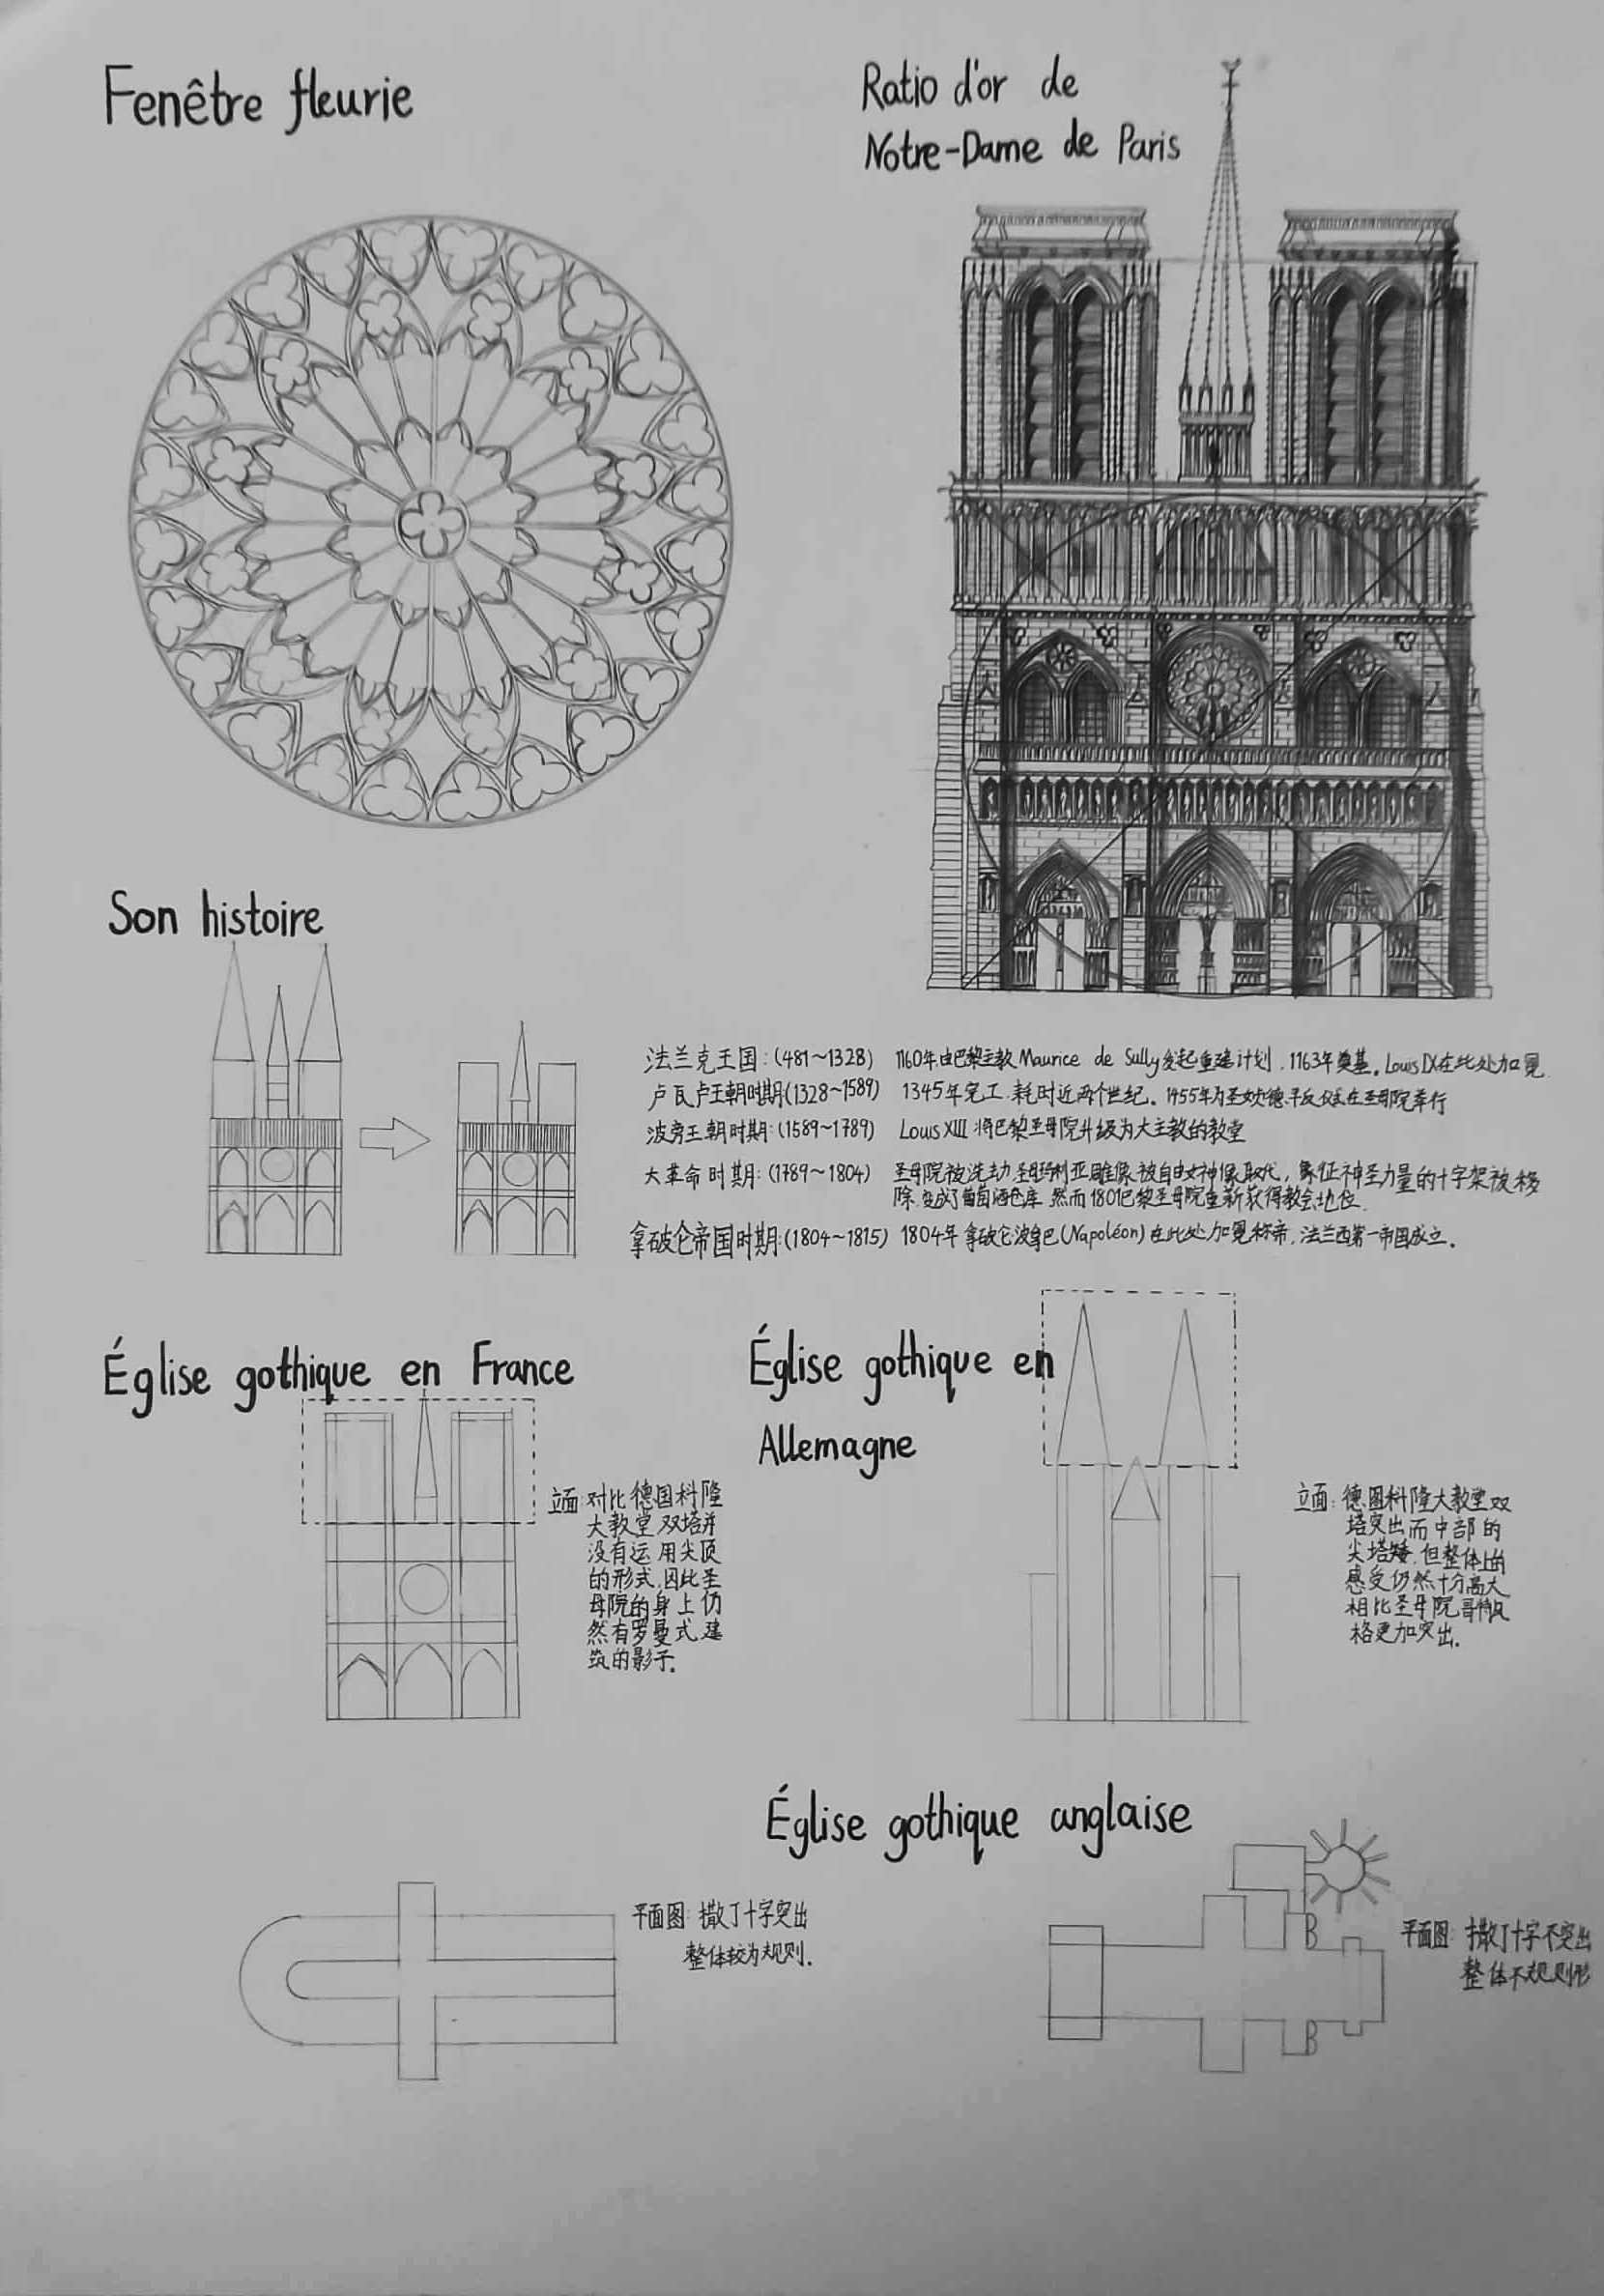 路思义教堂抄绘图片